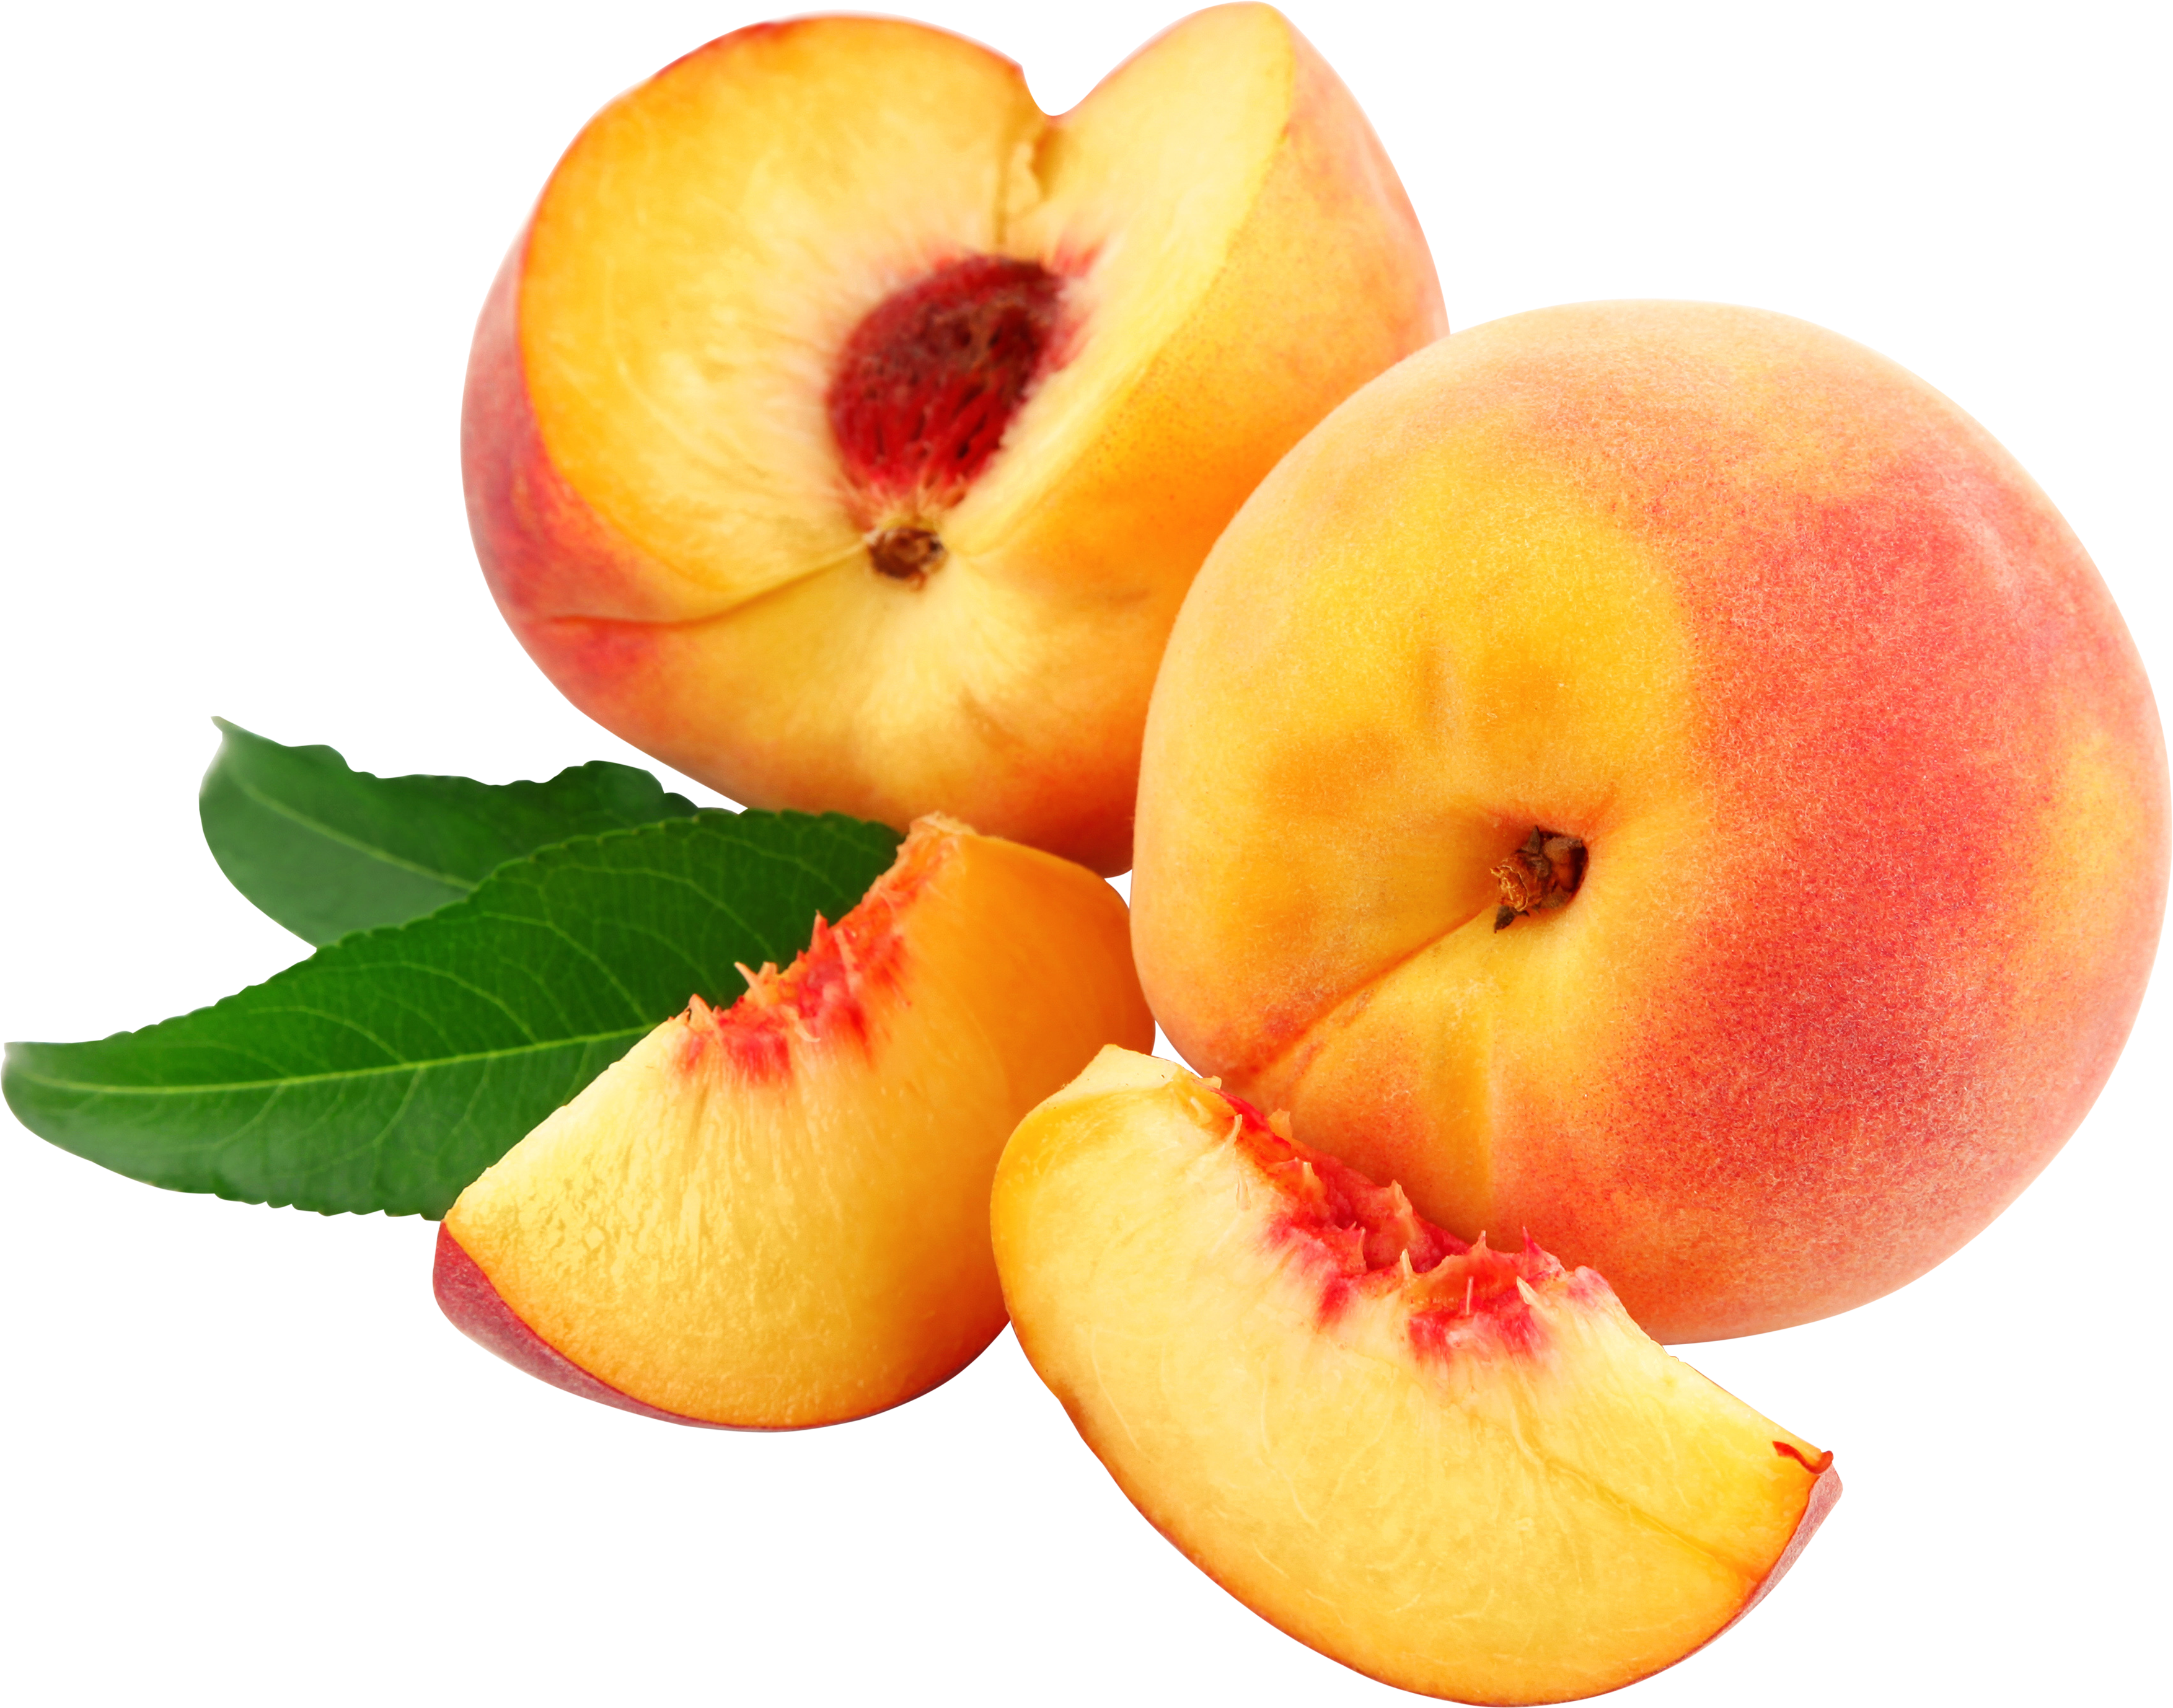 Honey peach. Фрукты персик нектарин. Shaftoli Sharbati. Нектарин манговый. Персик Биг Хани.